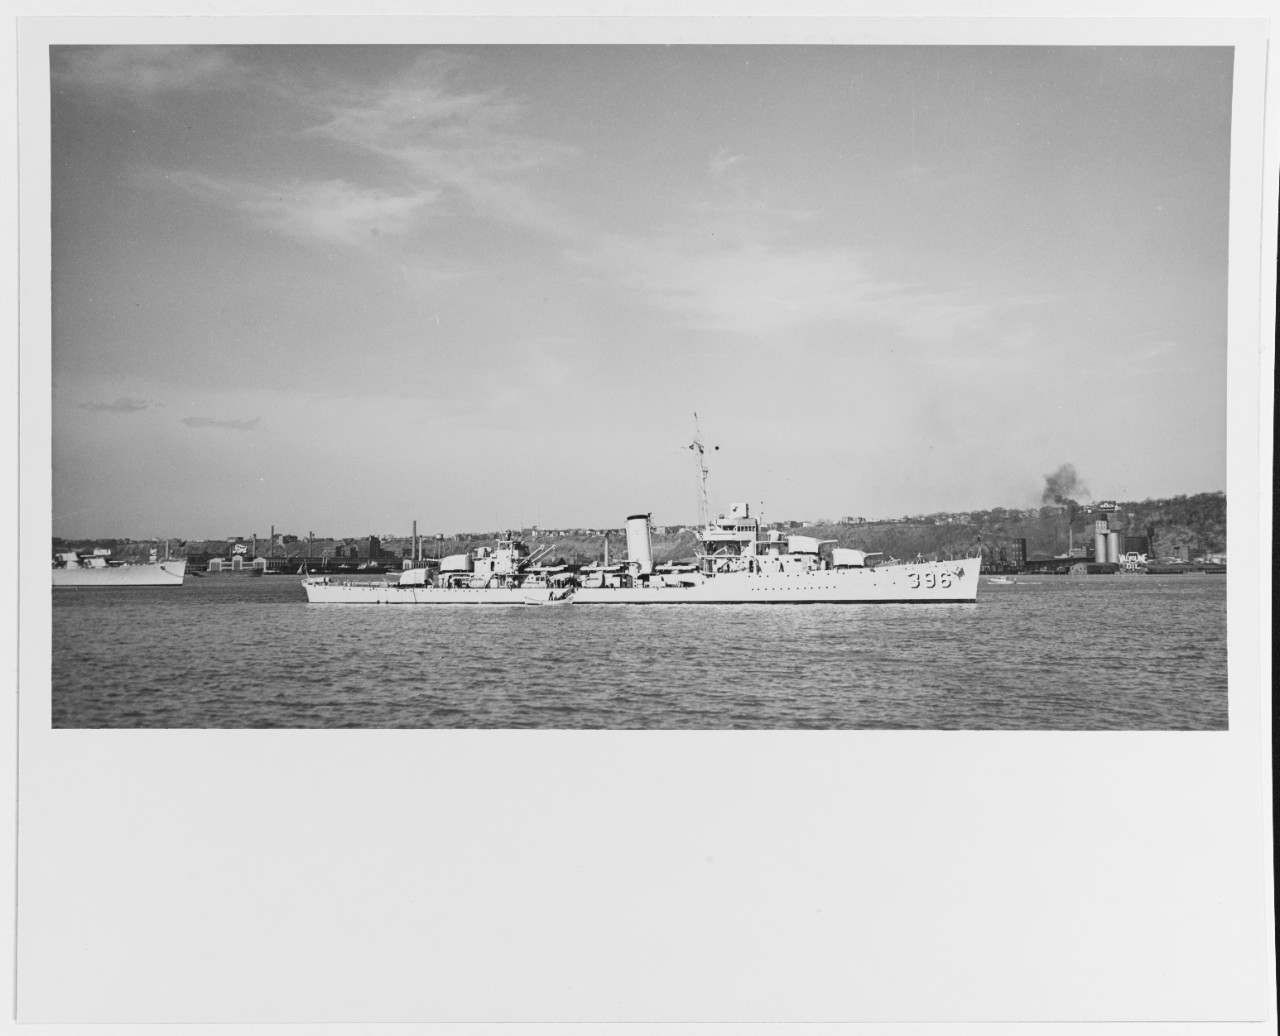 USS JOUETT (DD-396)